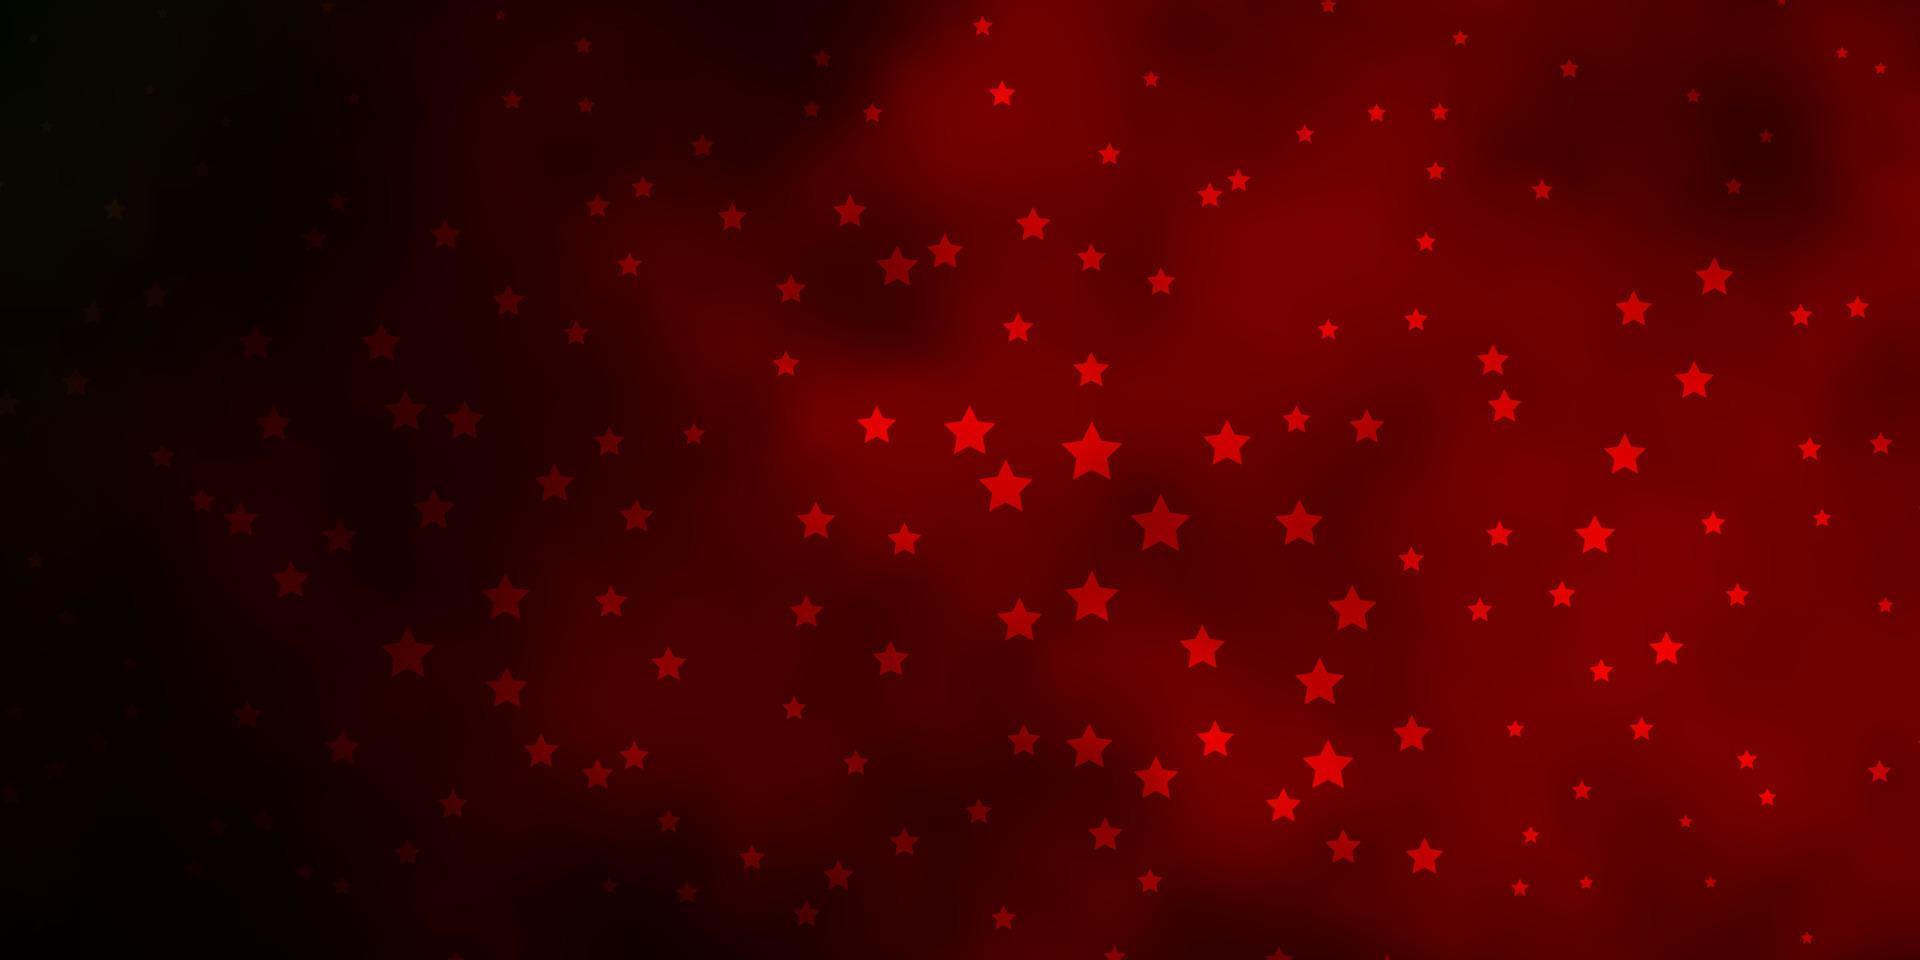 mörkgrön, röd vektorbakgrund med små och stora stjärnor. vektor